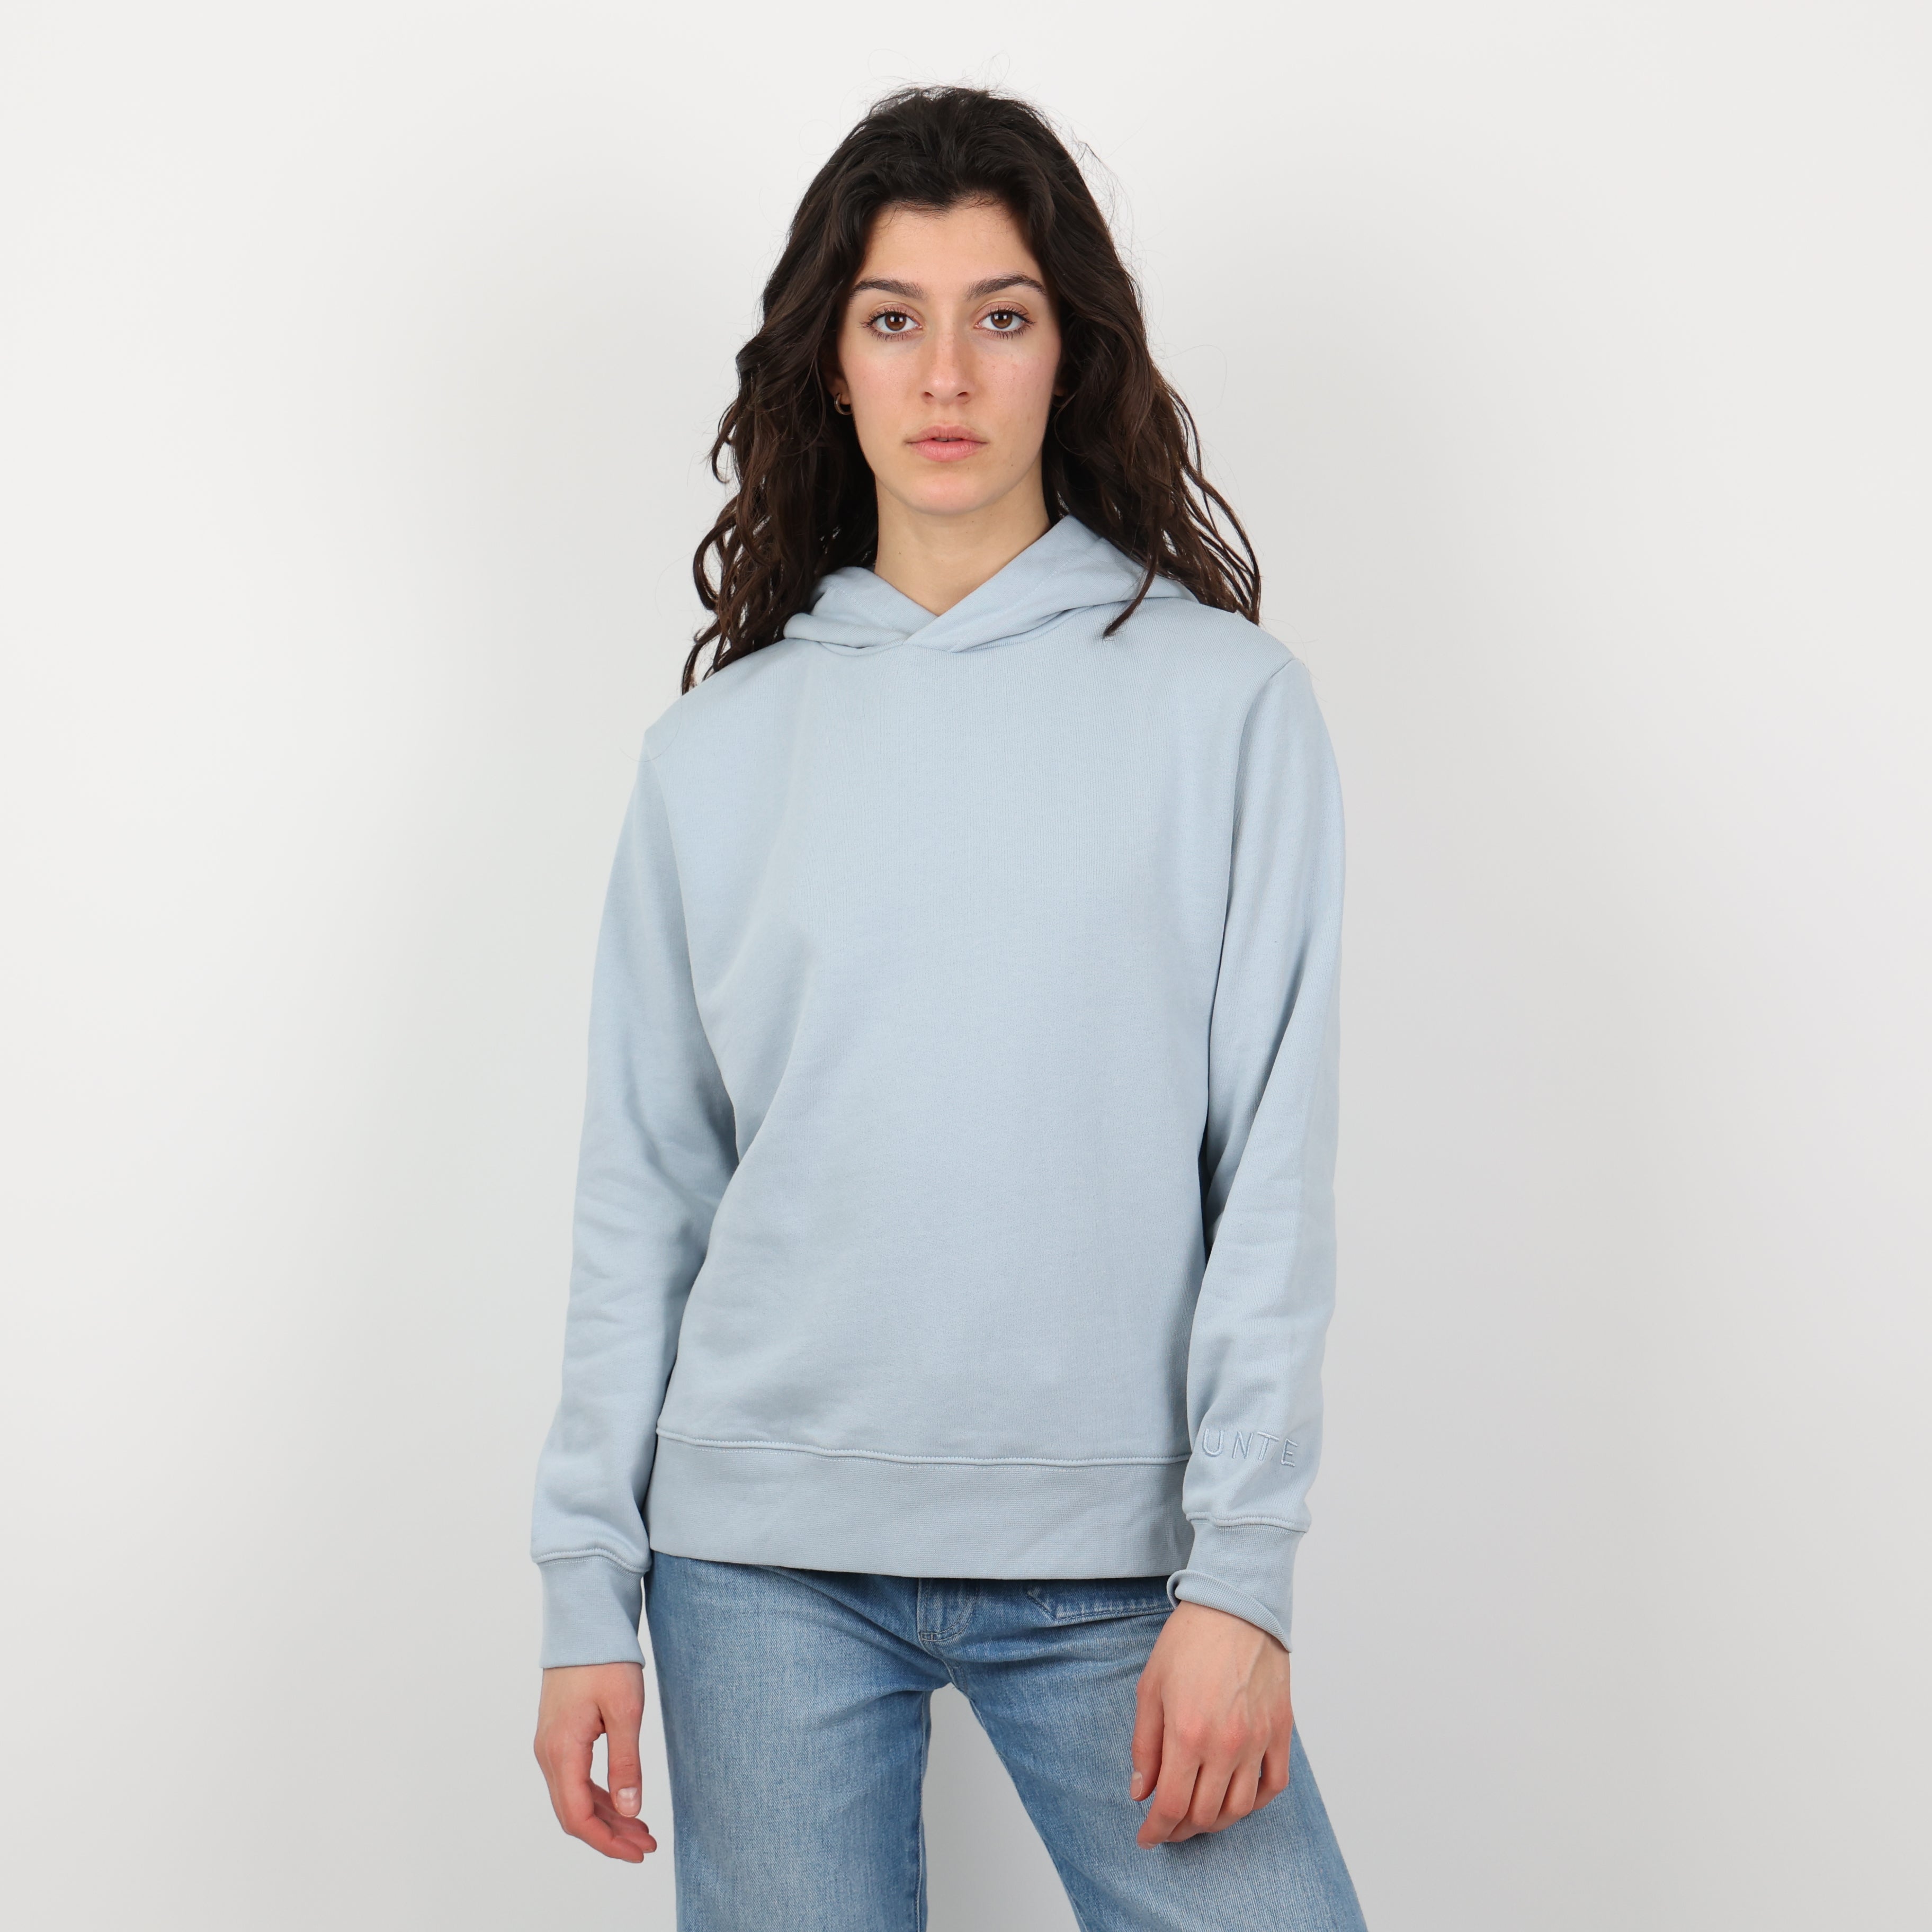 Sweatshirt, UK Size 6